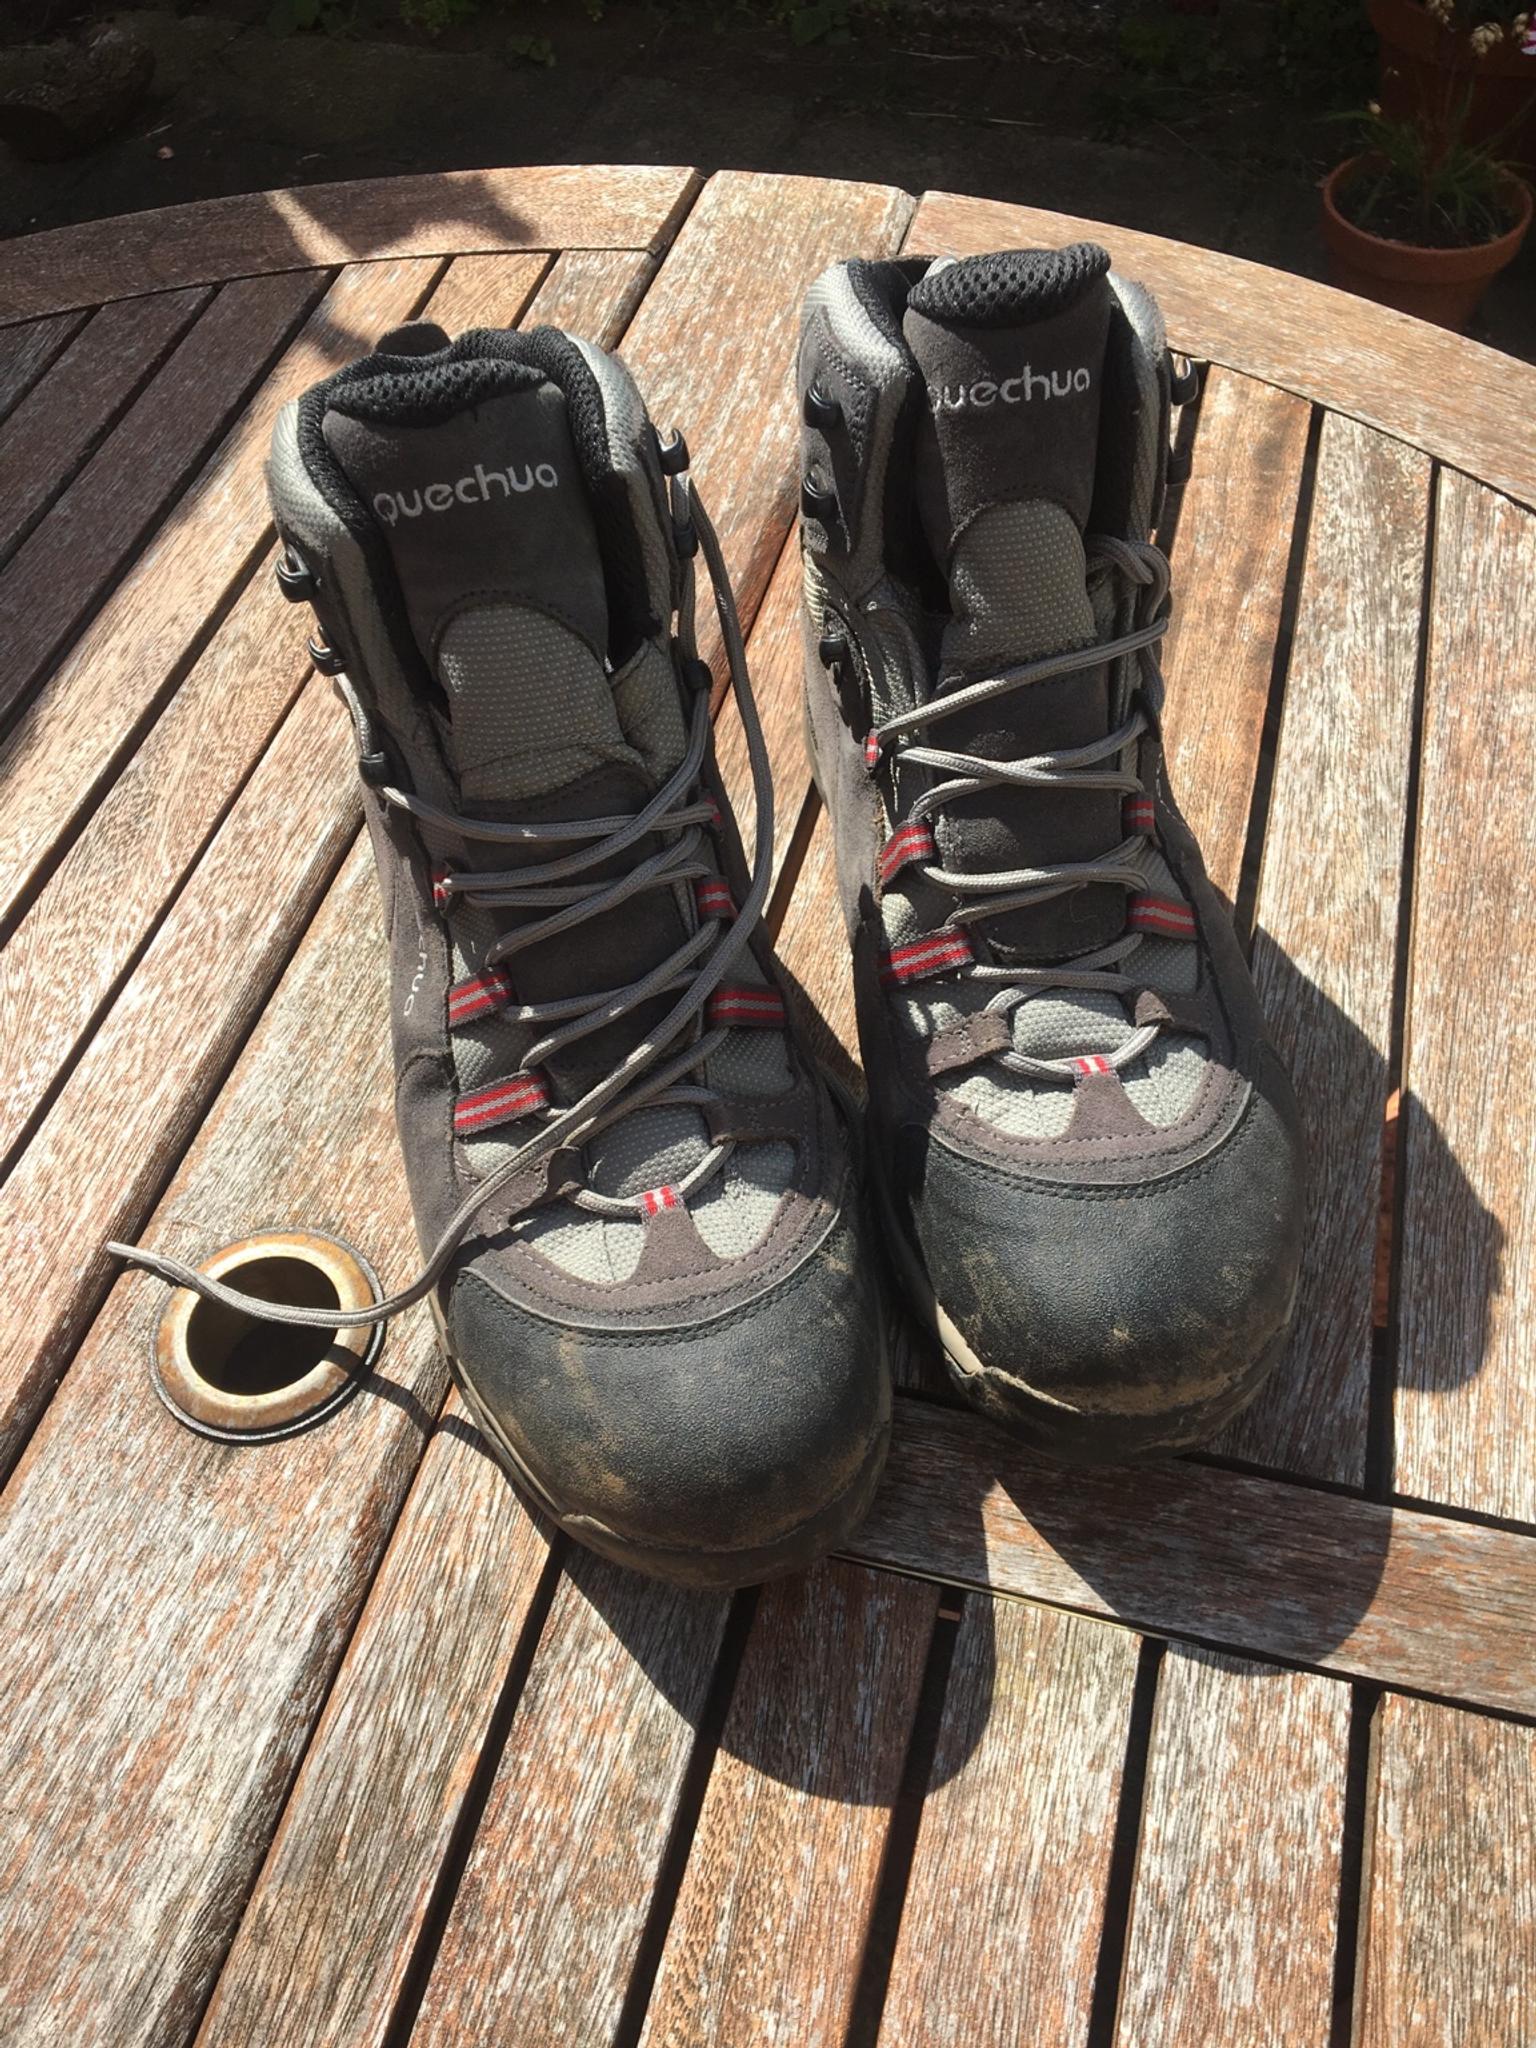 forclaz trek 700 boots review